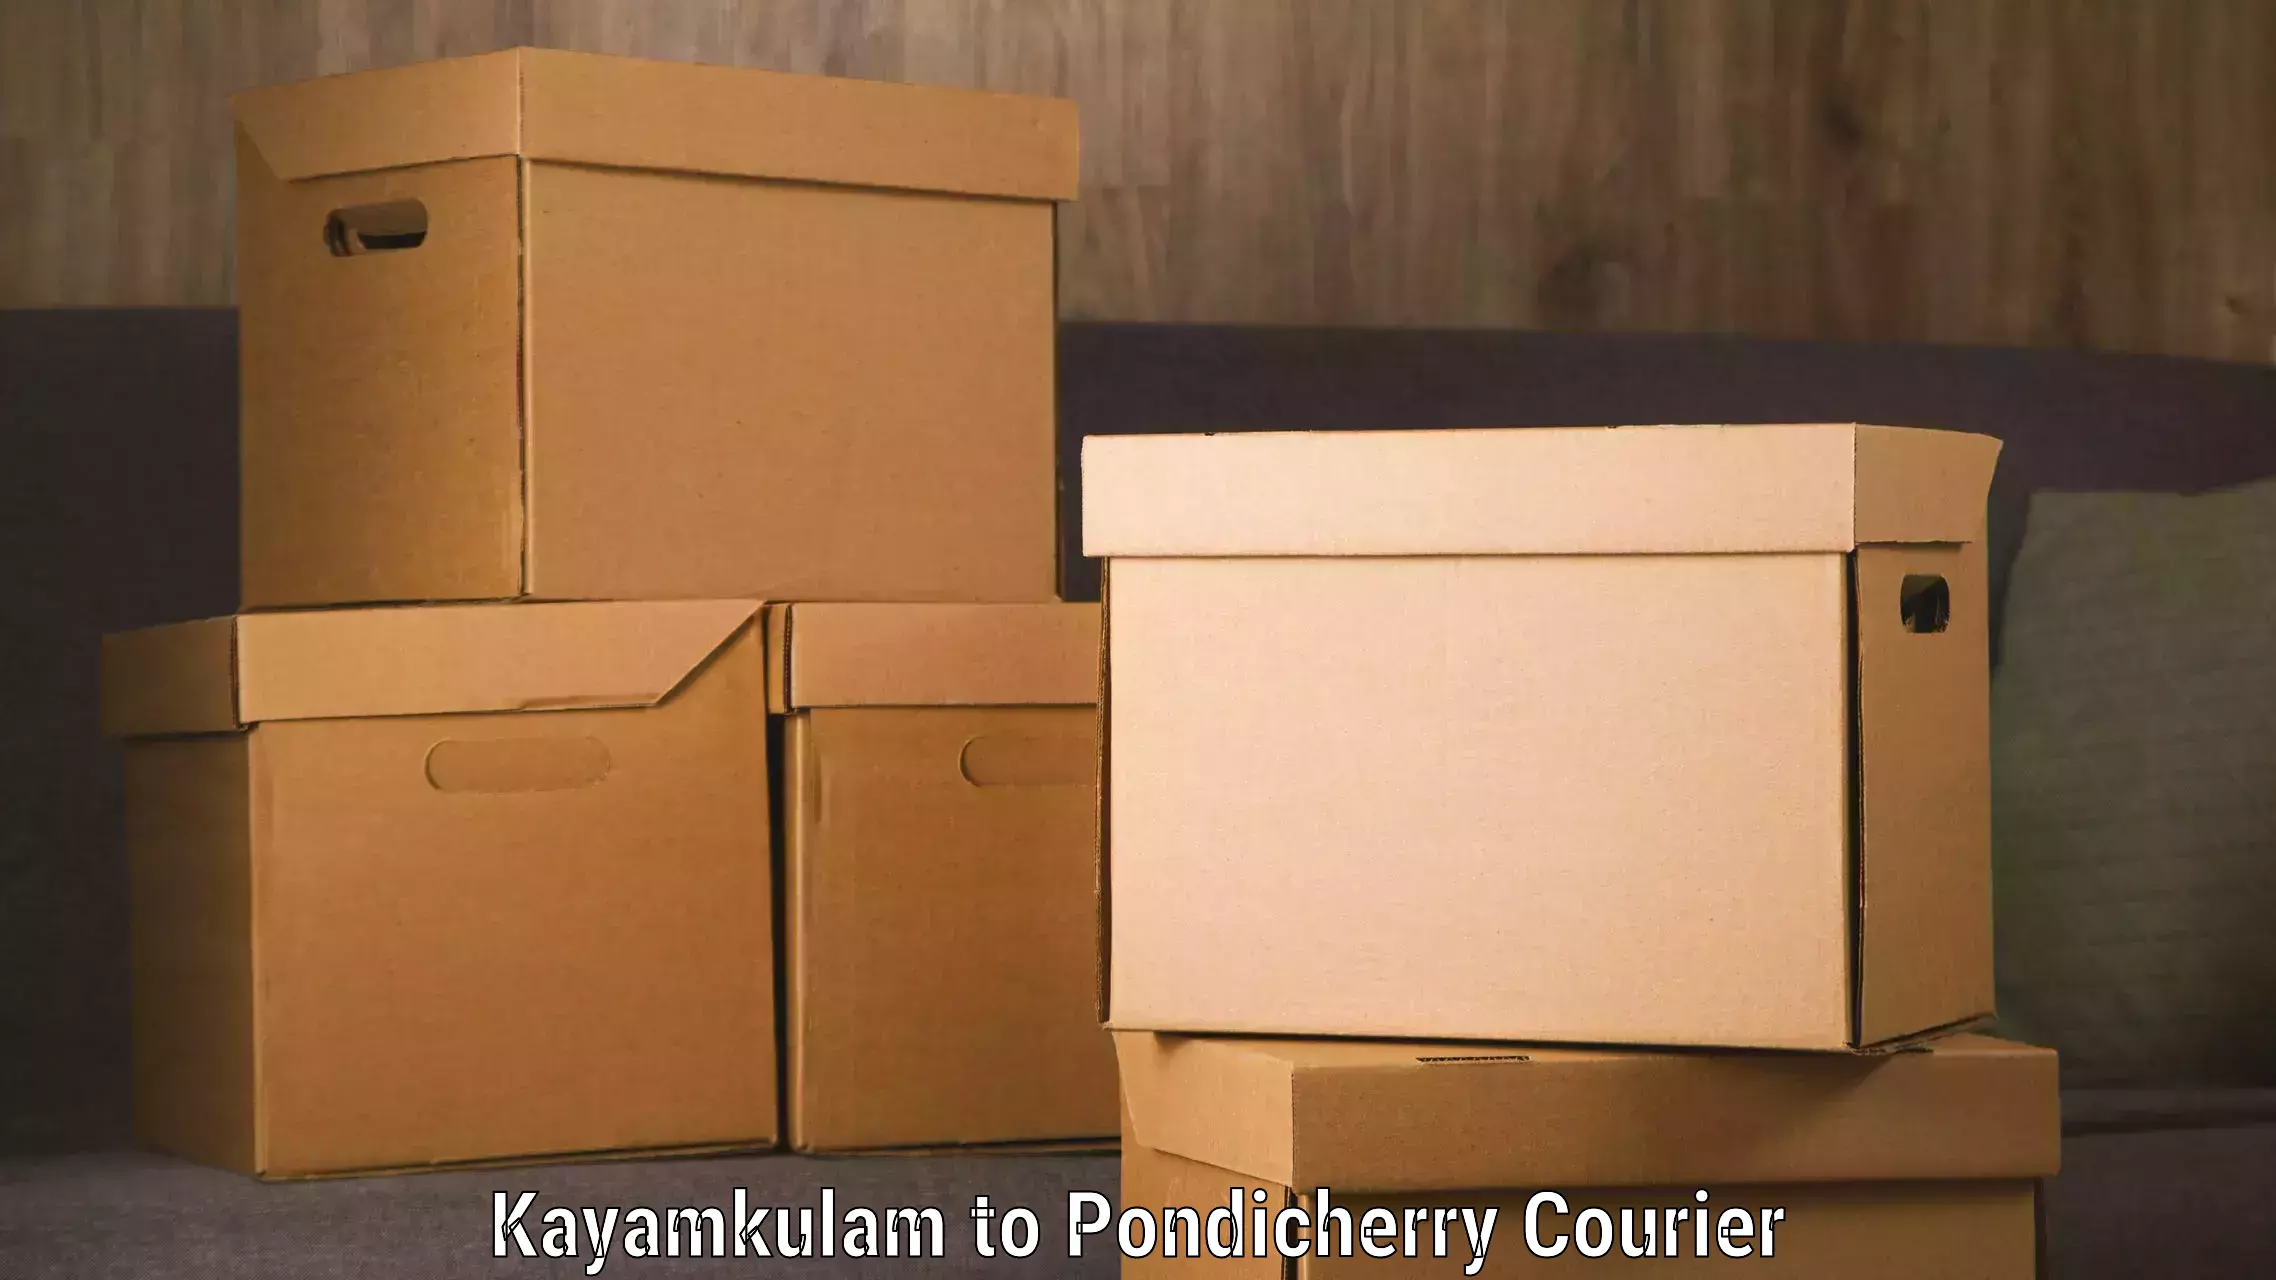 Tech-enabled shipping Kayamkulam to Pondicherry University